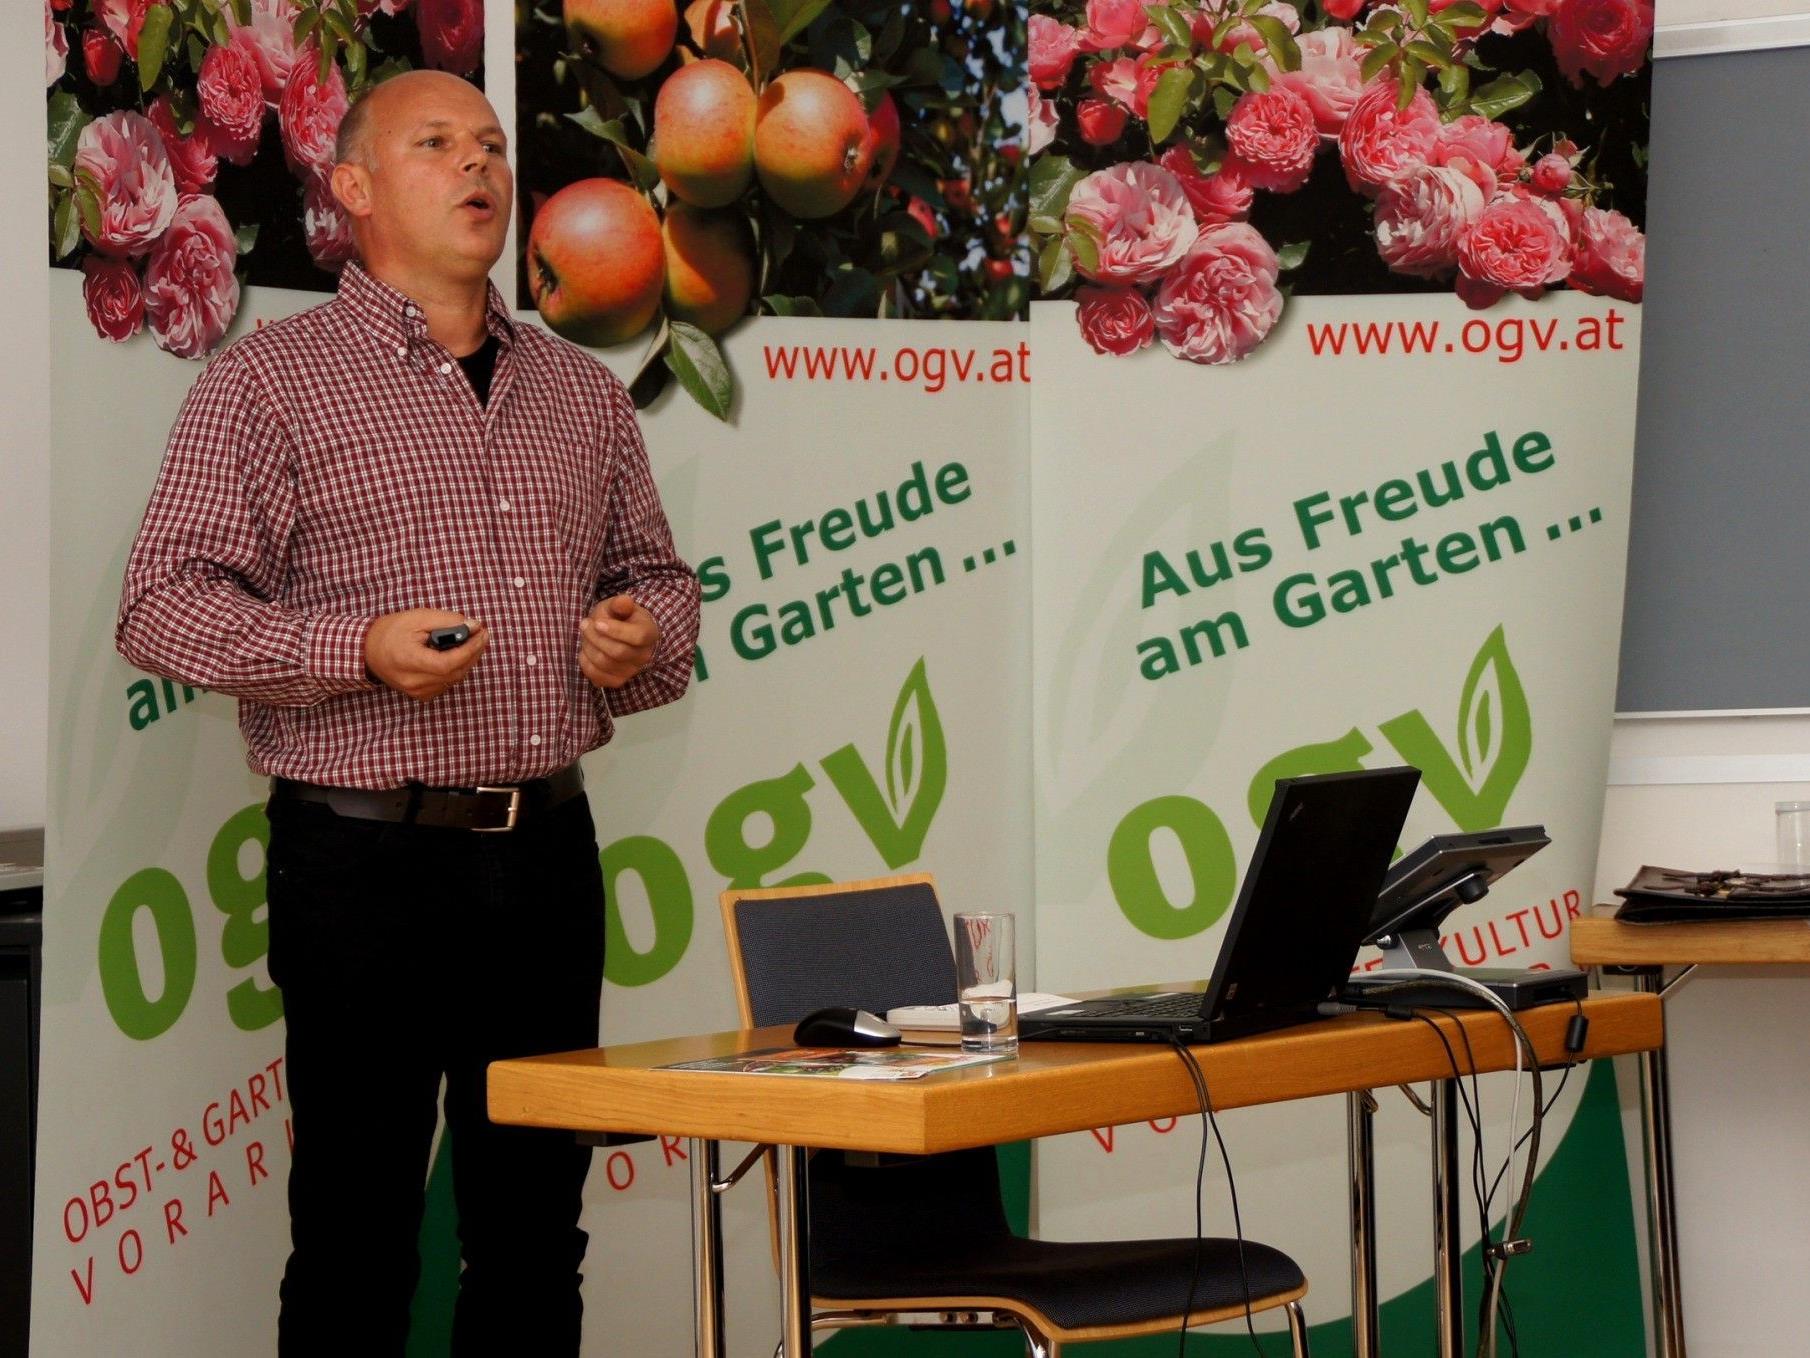 Dietmar Madlener informiert seine Gartenfreunde